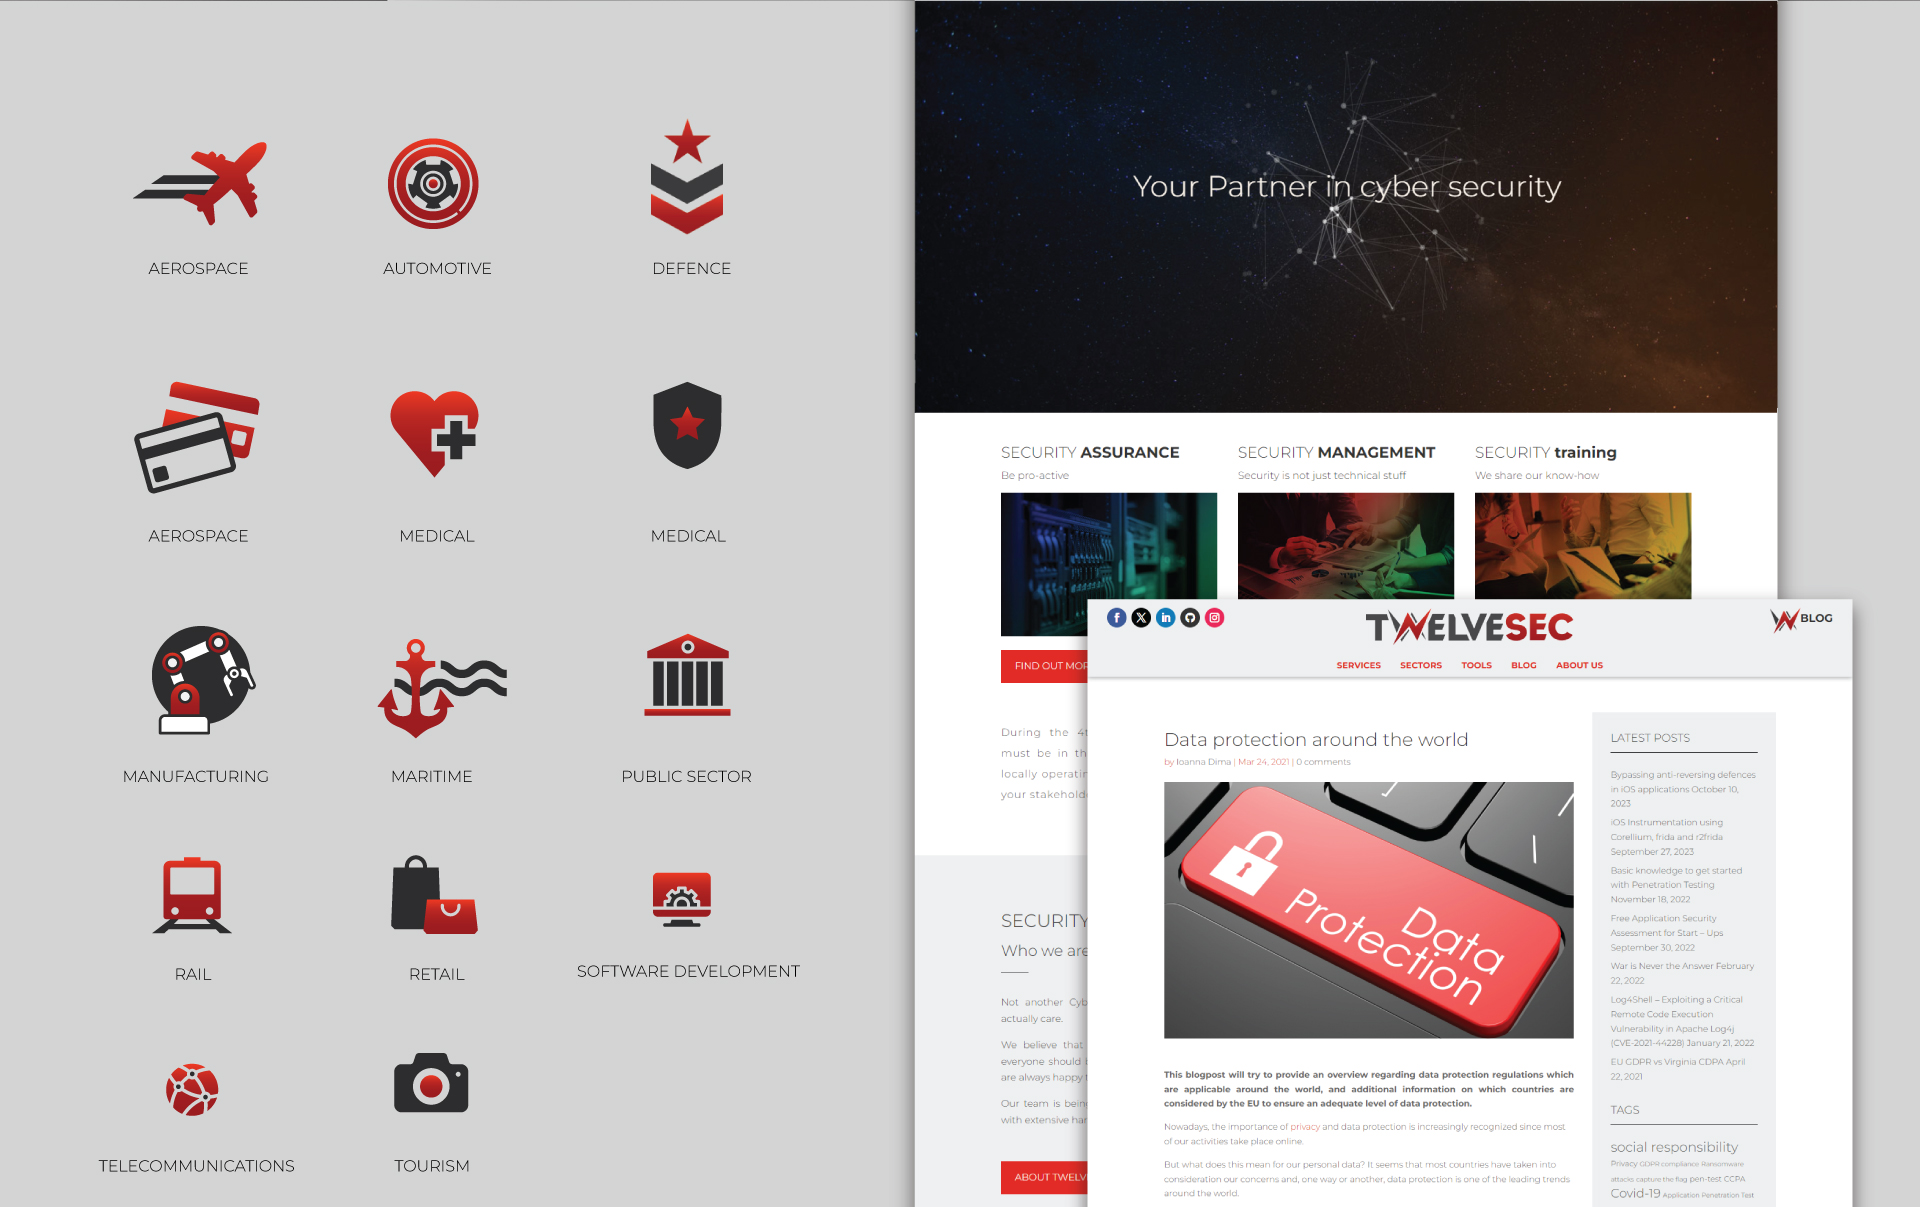 Twelvesec Website Design & Development